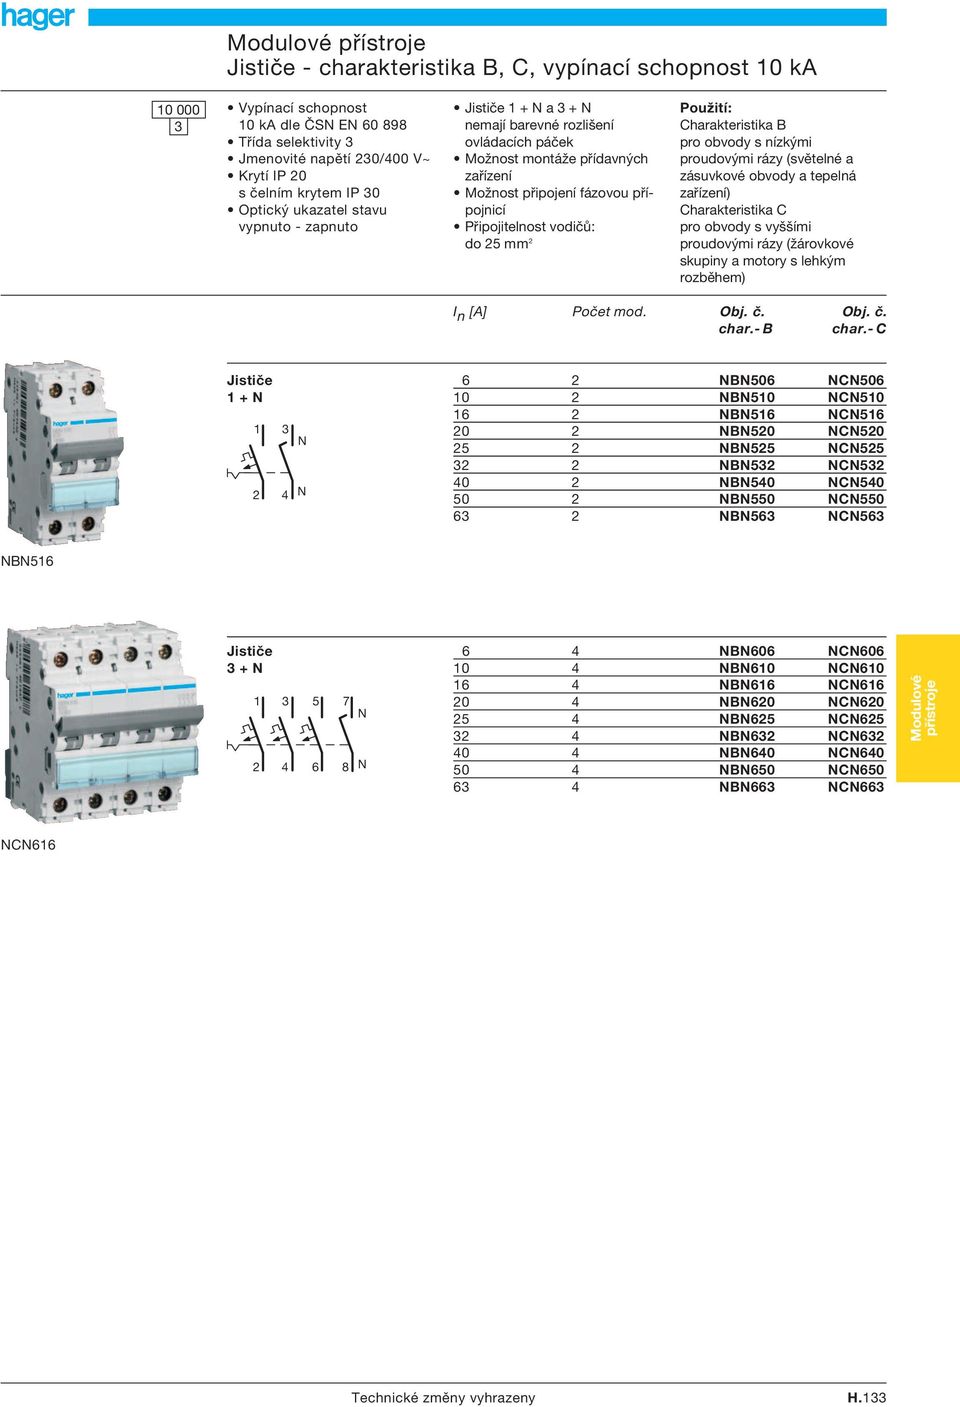 2 Použití: Charakteristika B pro obvody s nízkými proudovými rázy (světelné a zásuvkové obvody a tepelná zařízení) Charakteristika C pro obvody s vyššími proudovými rázy (žárovkové skupiny a motory s